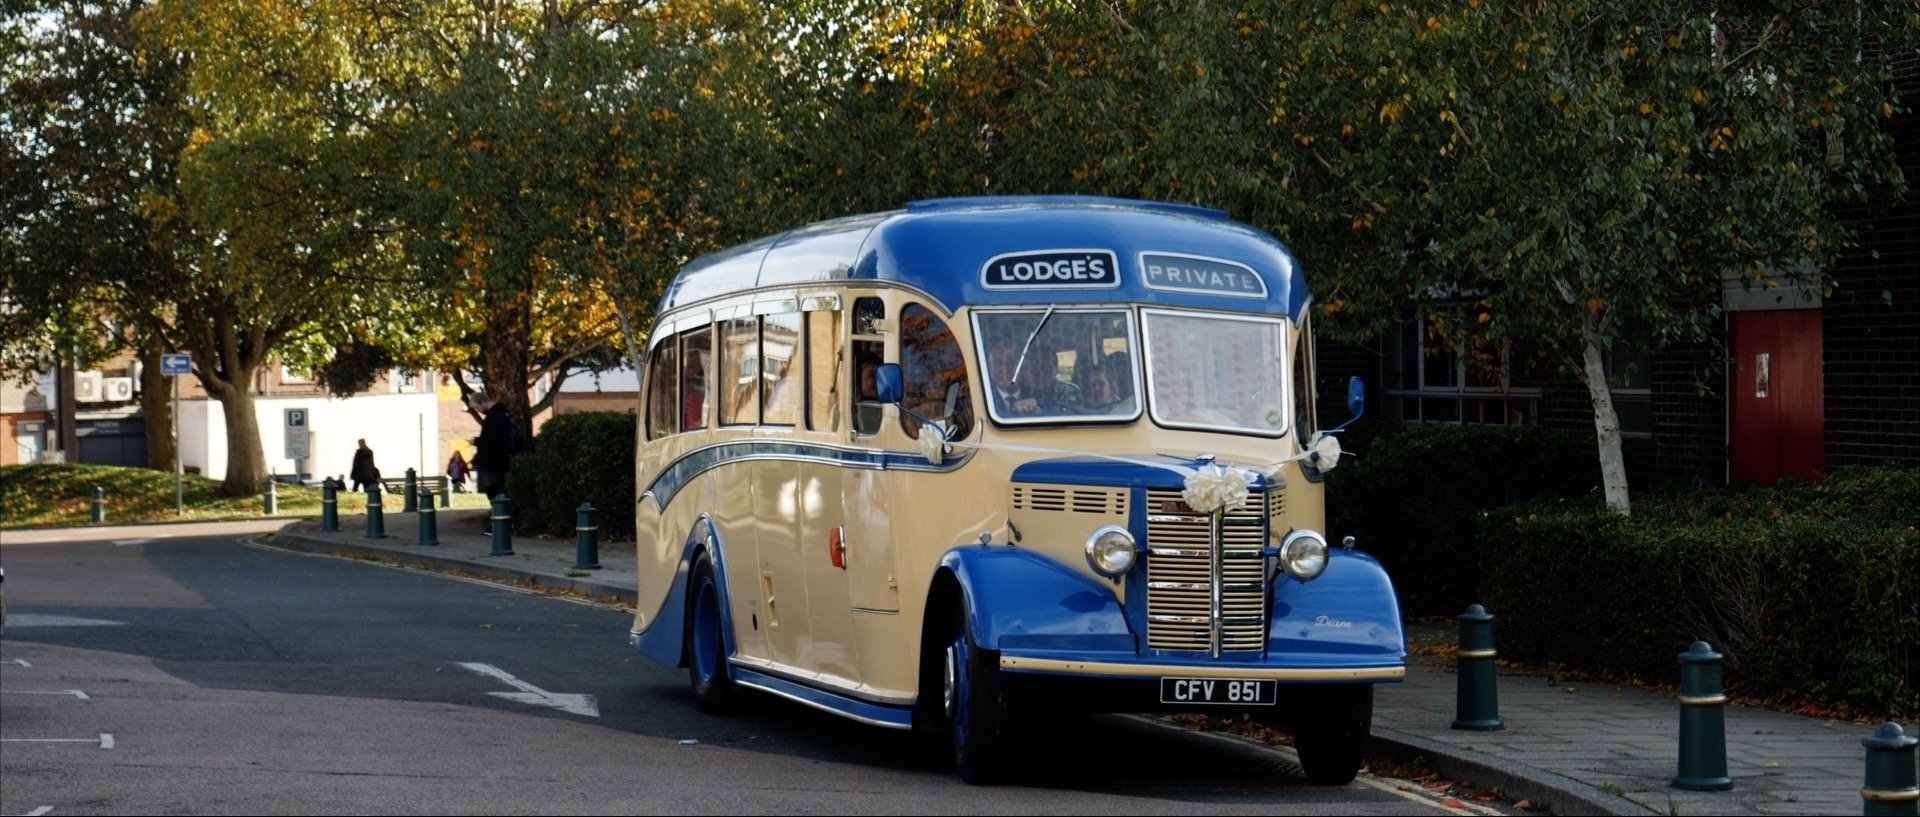 1950s wedding bus video Essex weddings.jpg